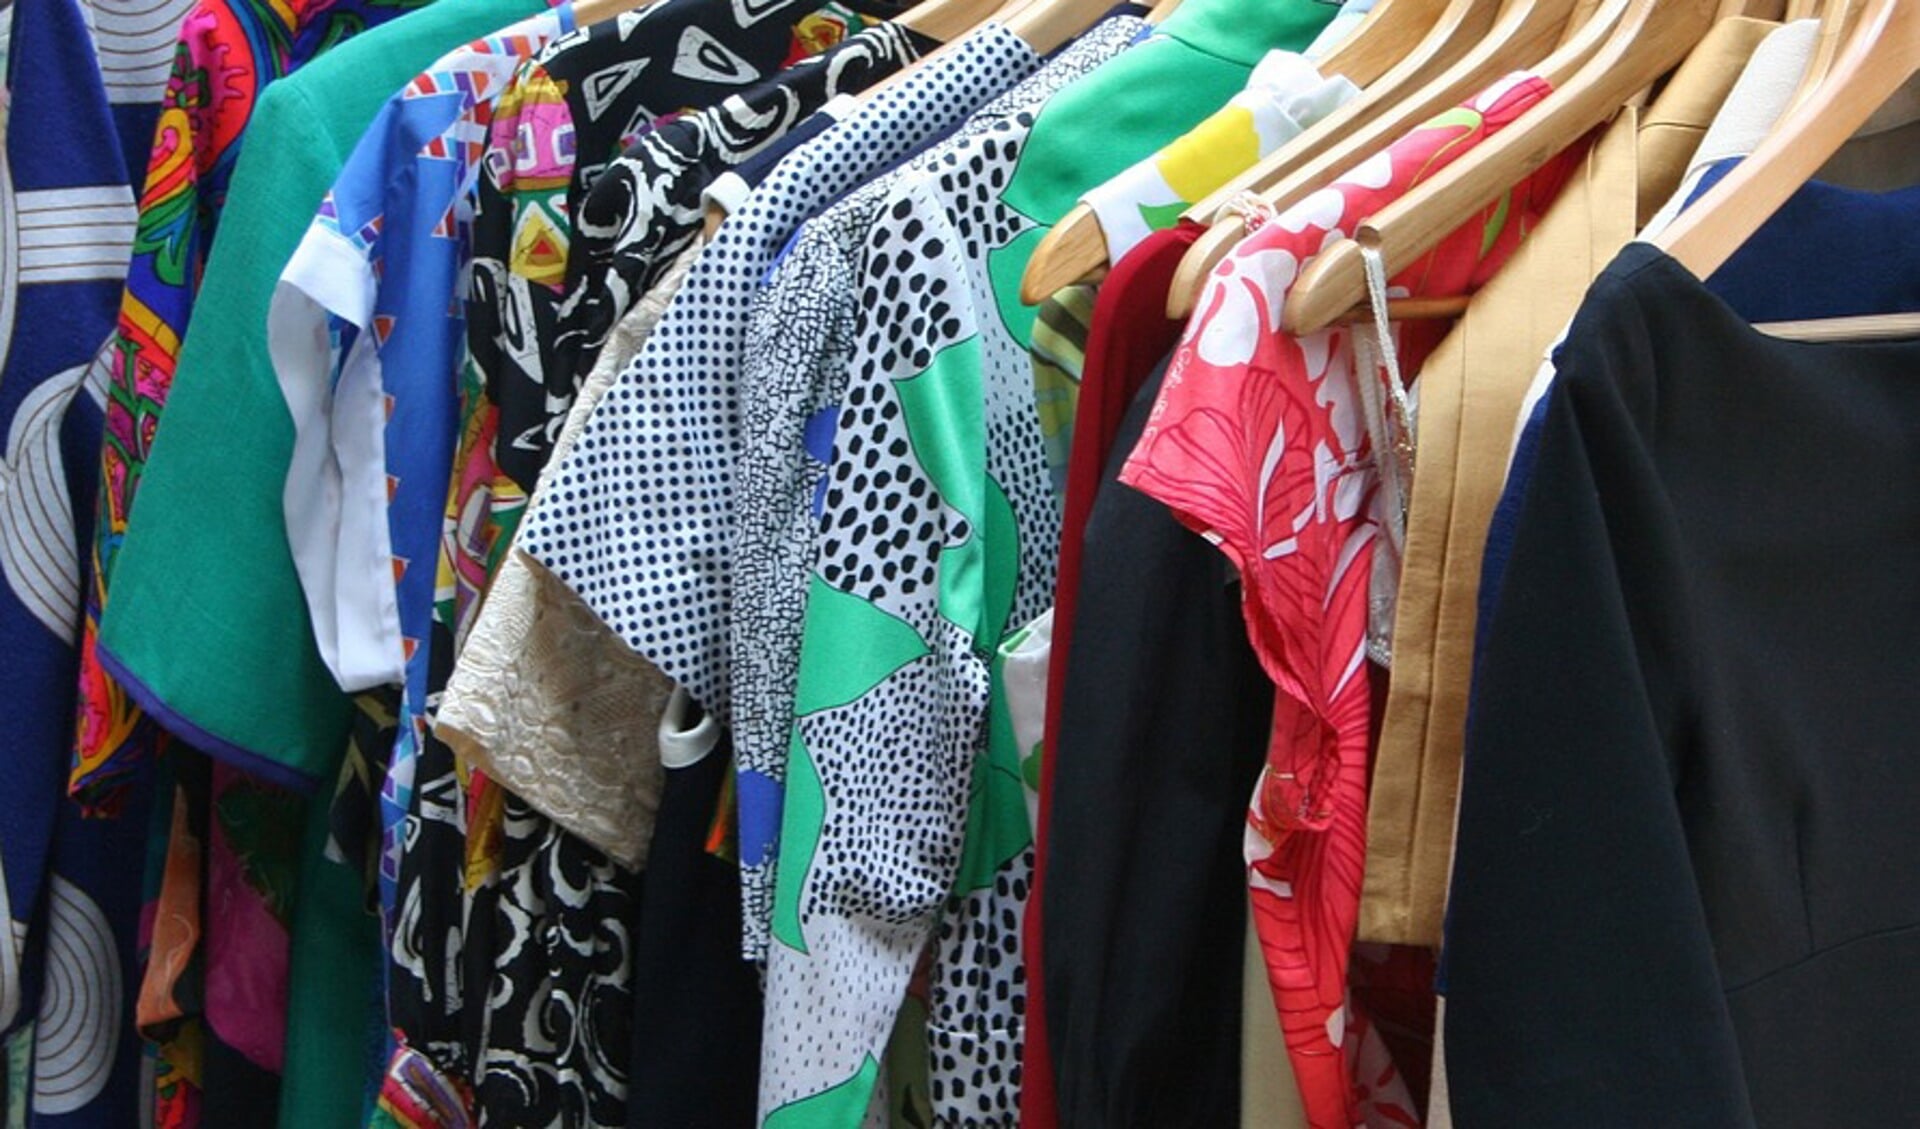 Shuraba Aangepaste weekend Kom ook naar de 'kleding-ruil-verkoop-markt' in Gennep - Adverteren Boxmeer  | De Maas Driehoek | Krant en Online